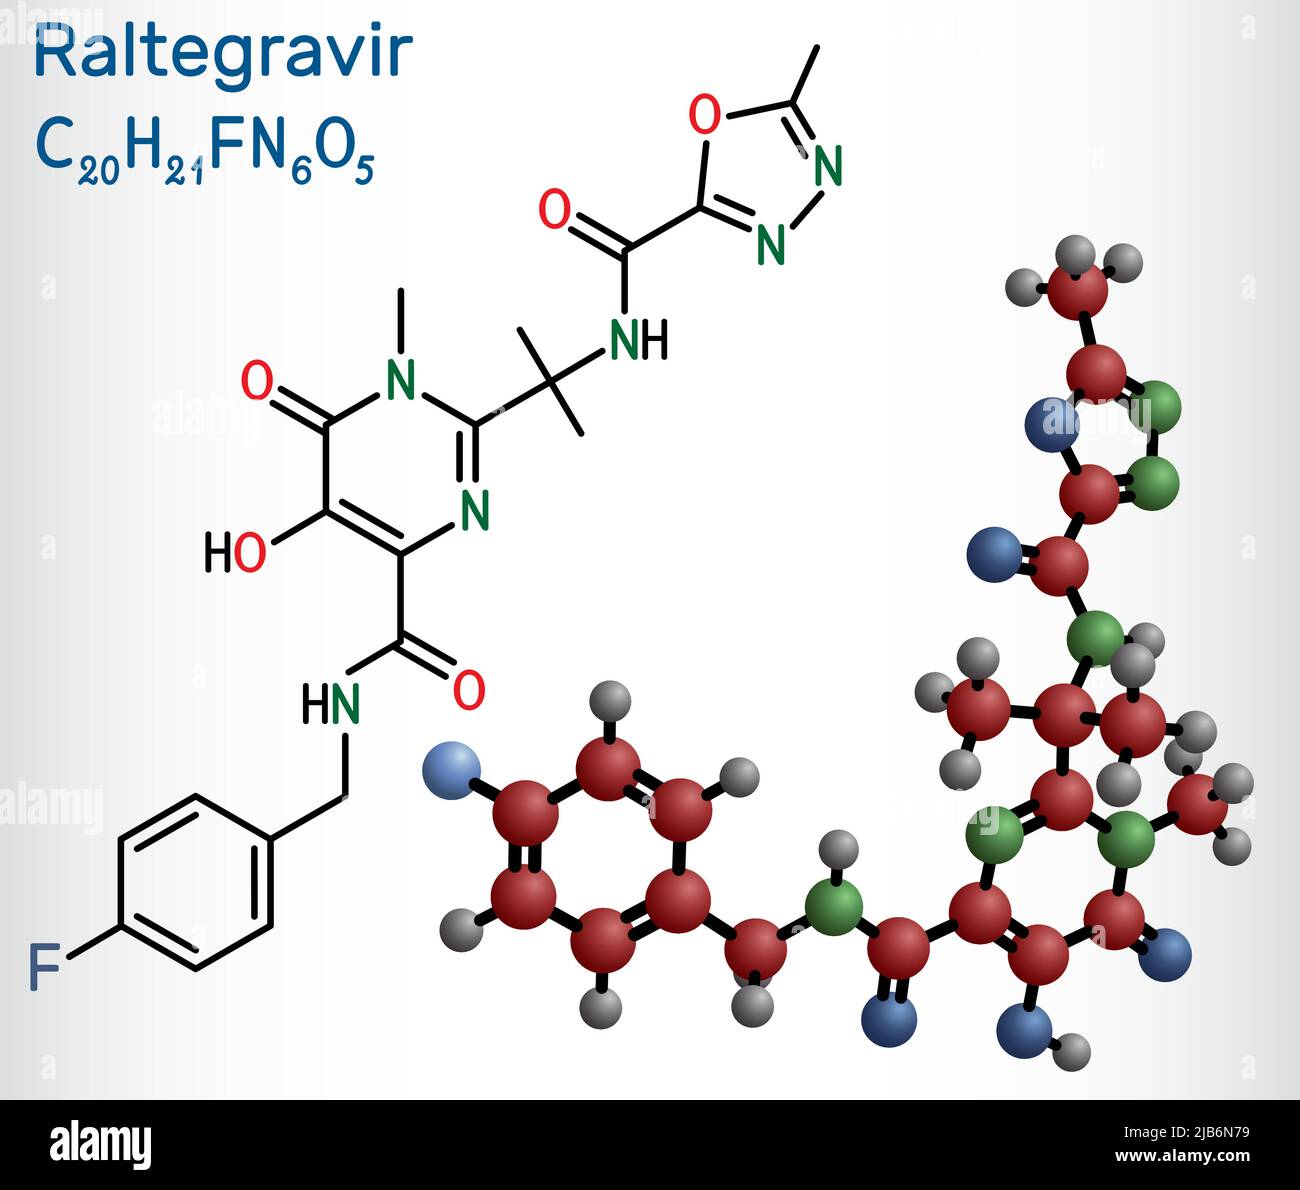 RALTEGRAVIR, RAL-Molekül. Es handelt sich um antiretrovirale Medikamente, die zur Behandlung von HIV und AIDS verwendet werden. Strukturelle chemische Formel und Molekülmodell. Vektorgrafiken Stock Vektor